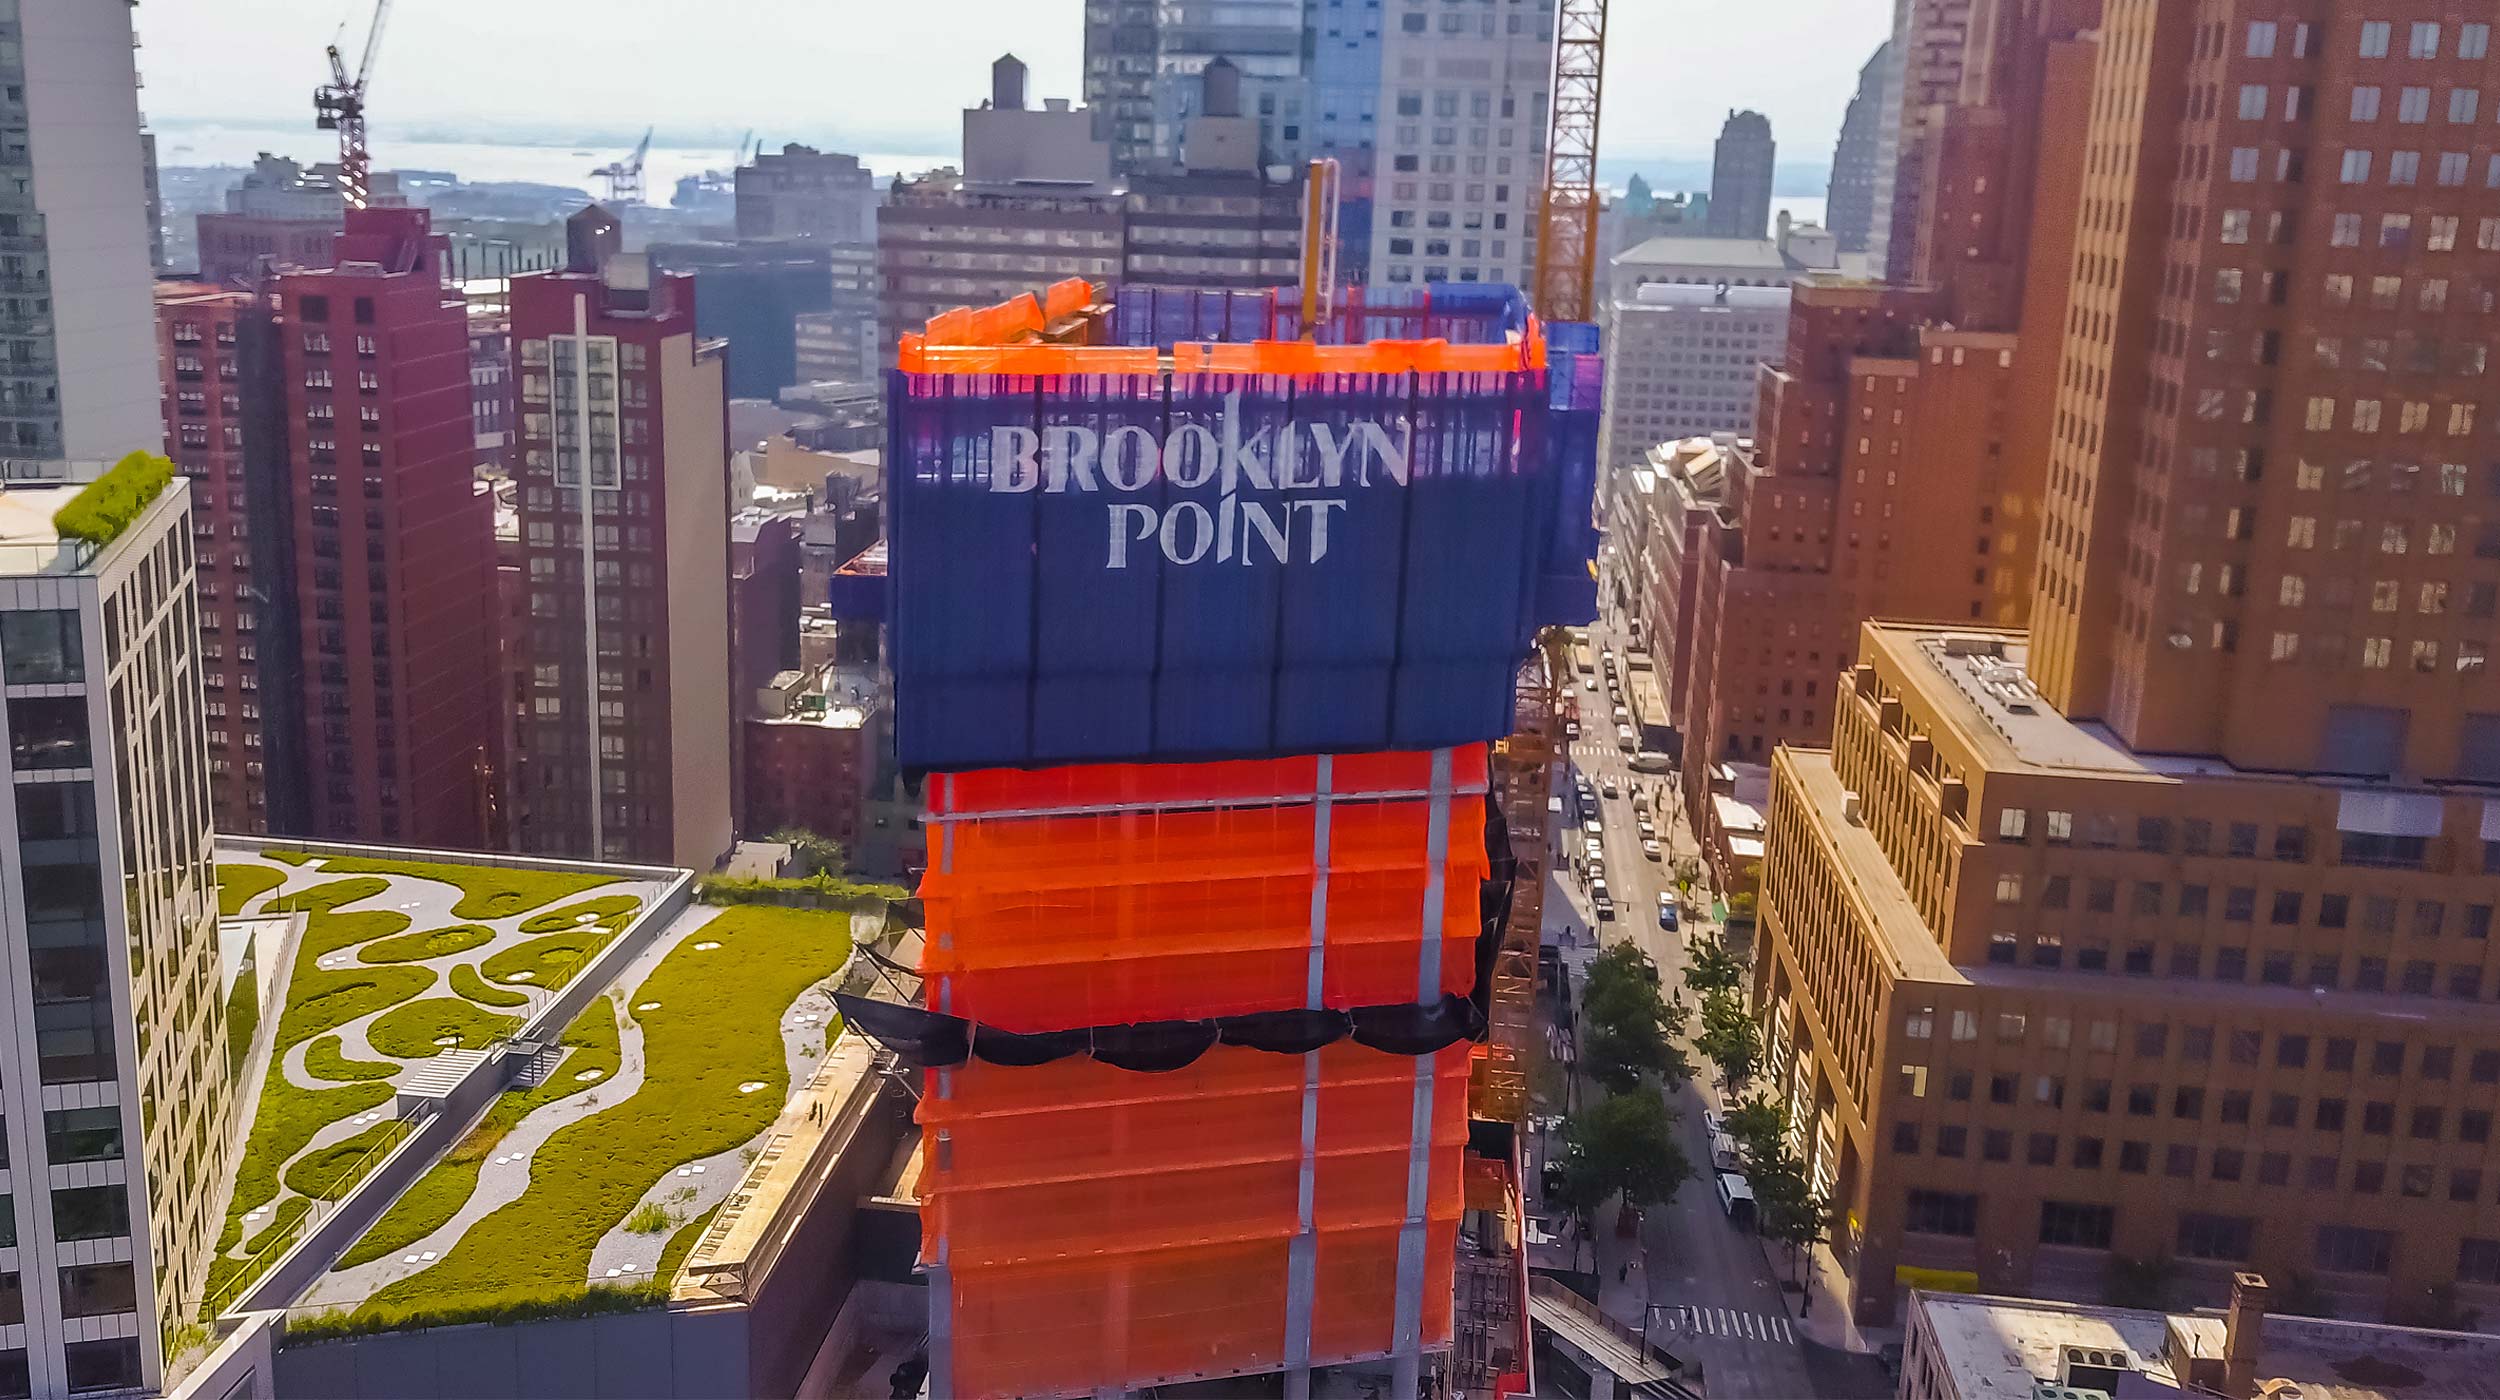 Torre residencial más alta de Brooklyn con 220 m de altura que cuenta con 68 pisos. El cliente seleccionó el sistema perimetral HWS para garantizar la seguridad en la construcción en altura.